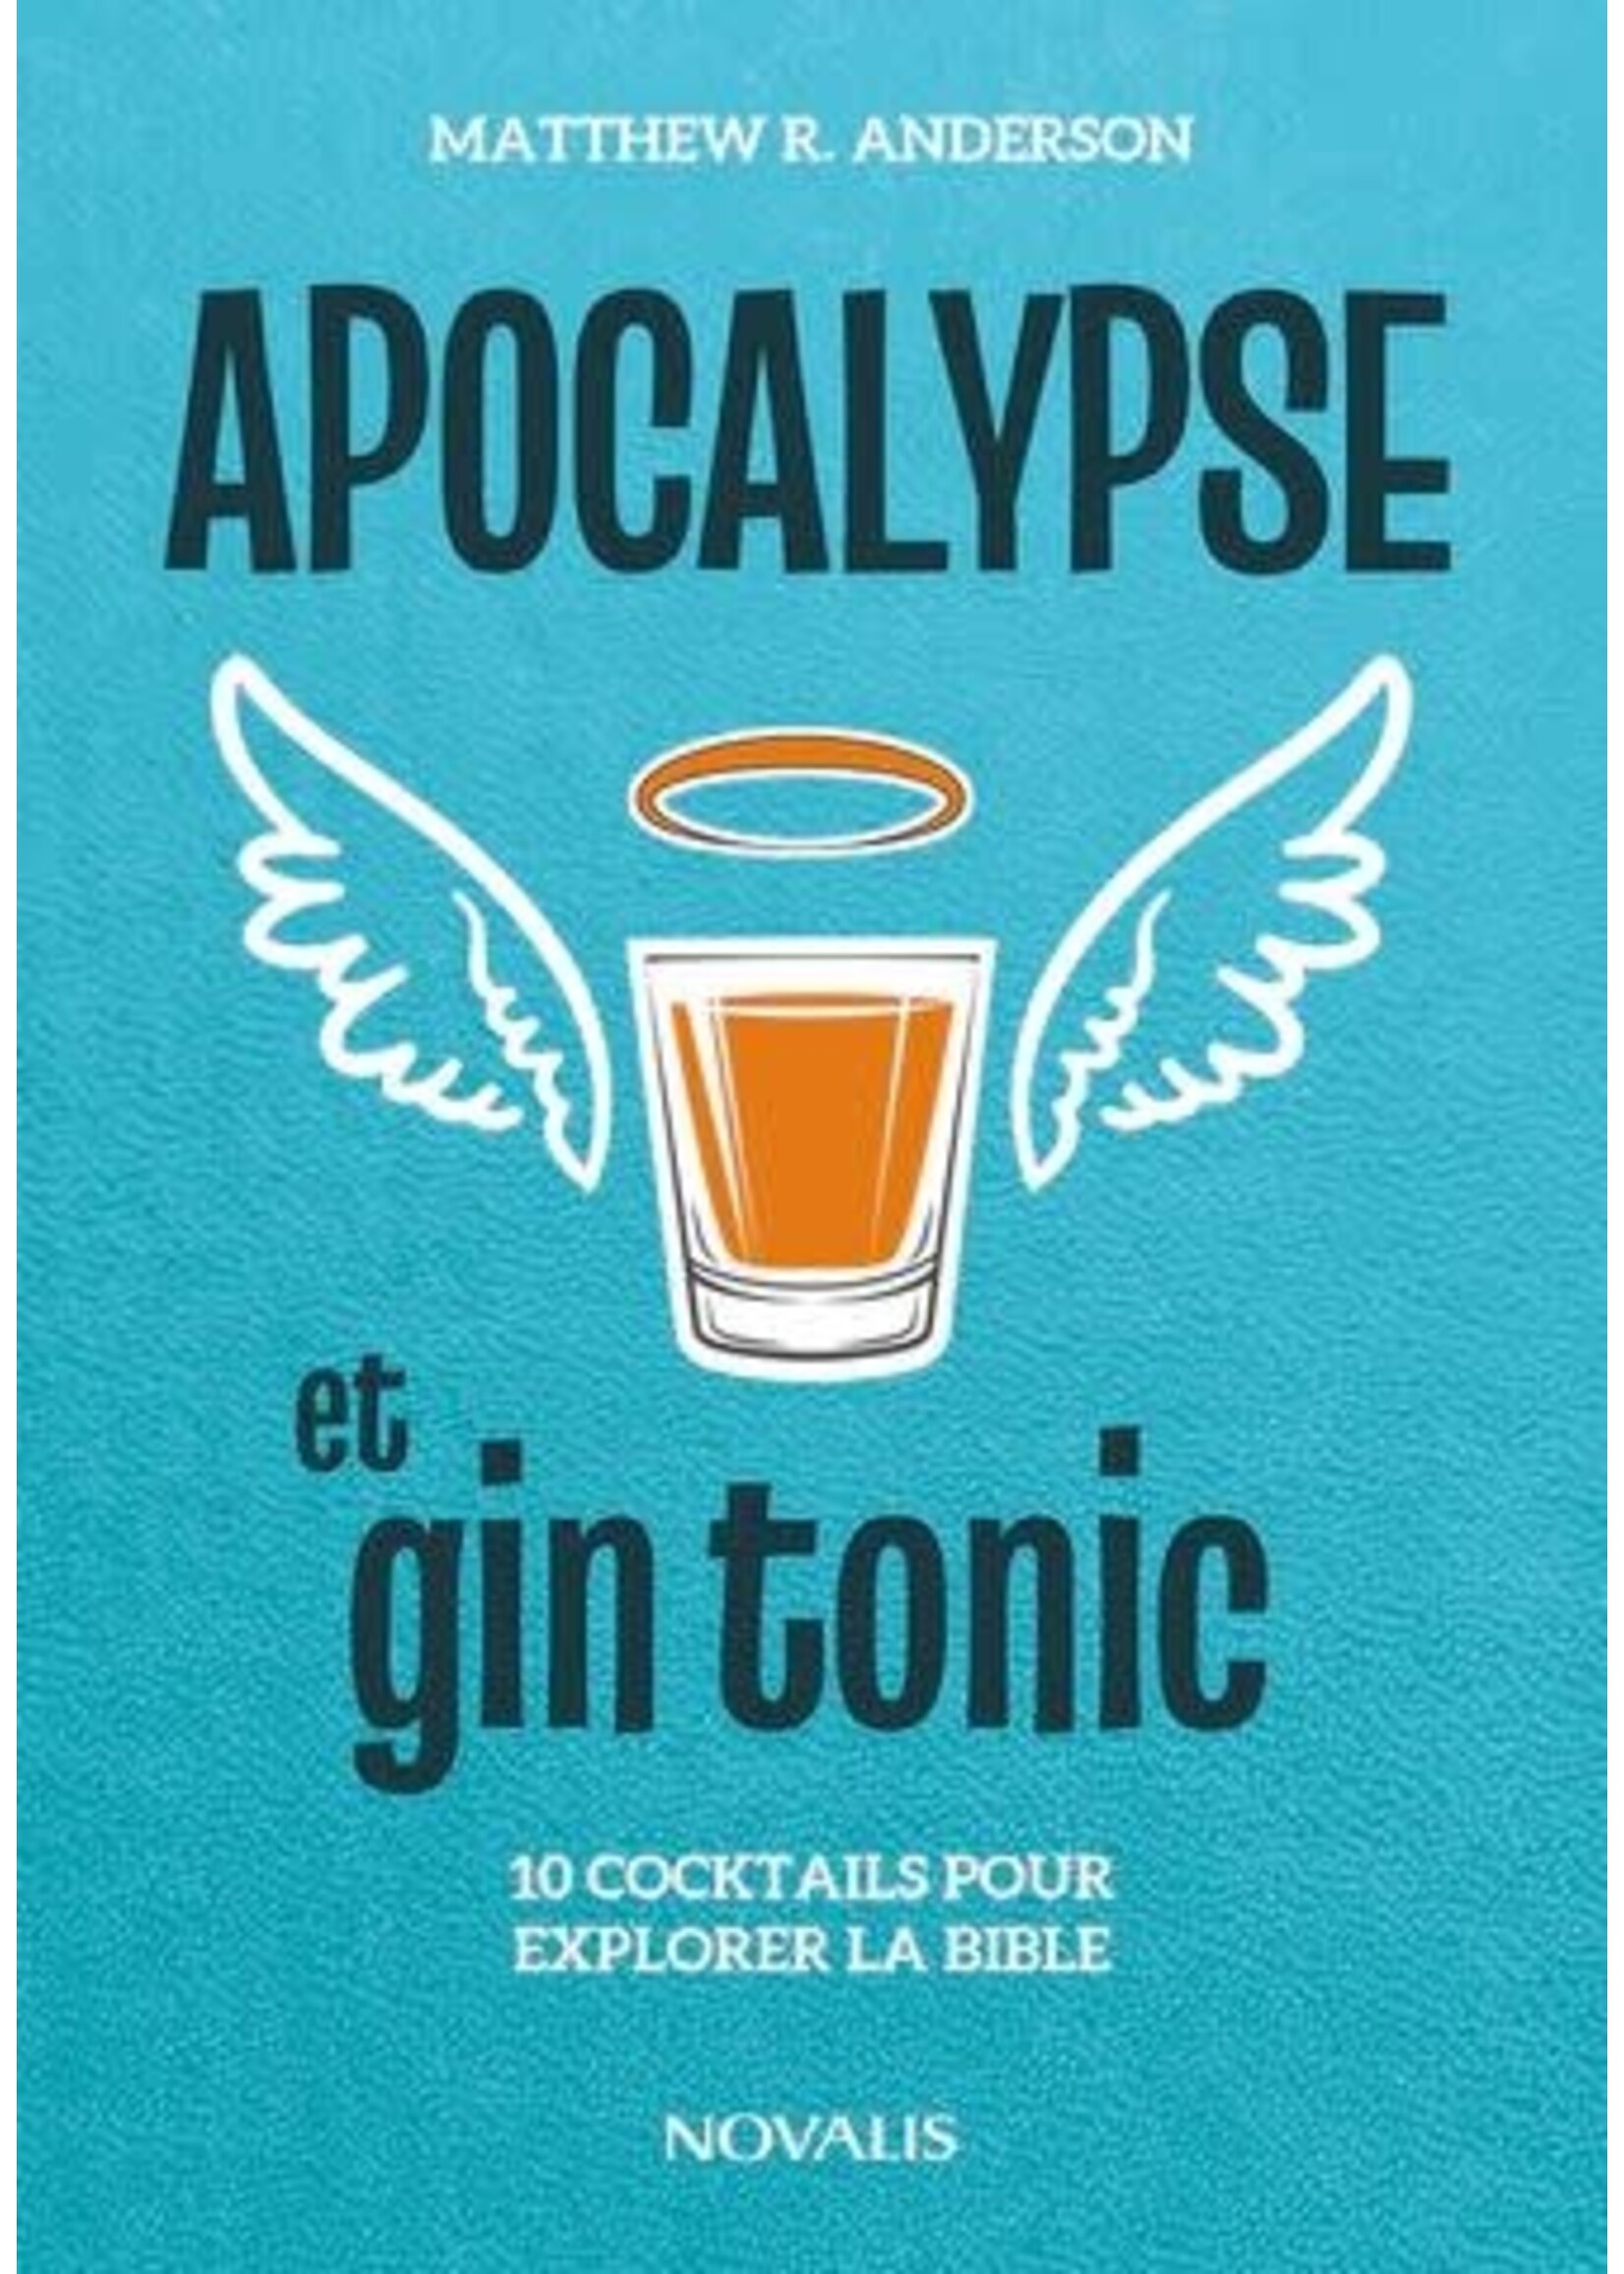 Apocalypse et gin tonic: 10 cocktails pour explorer la bible De Matthew R. Anderson